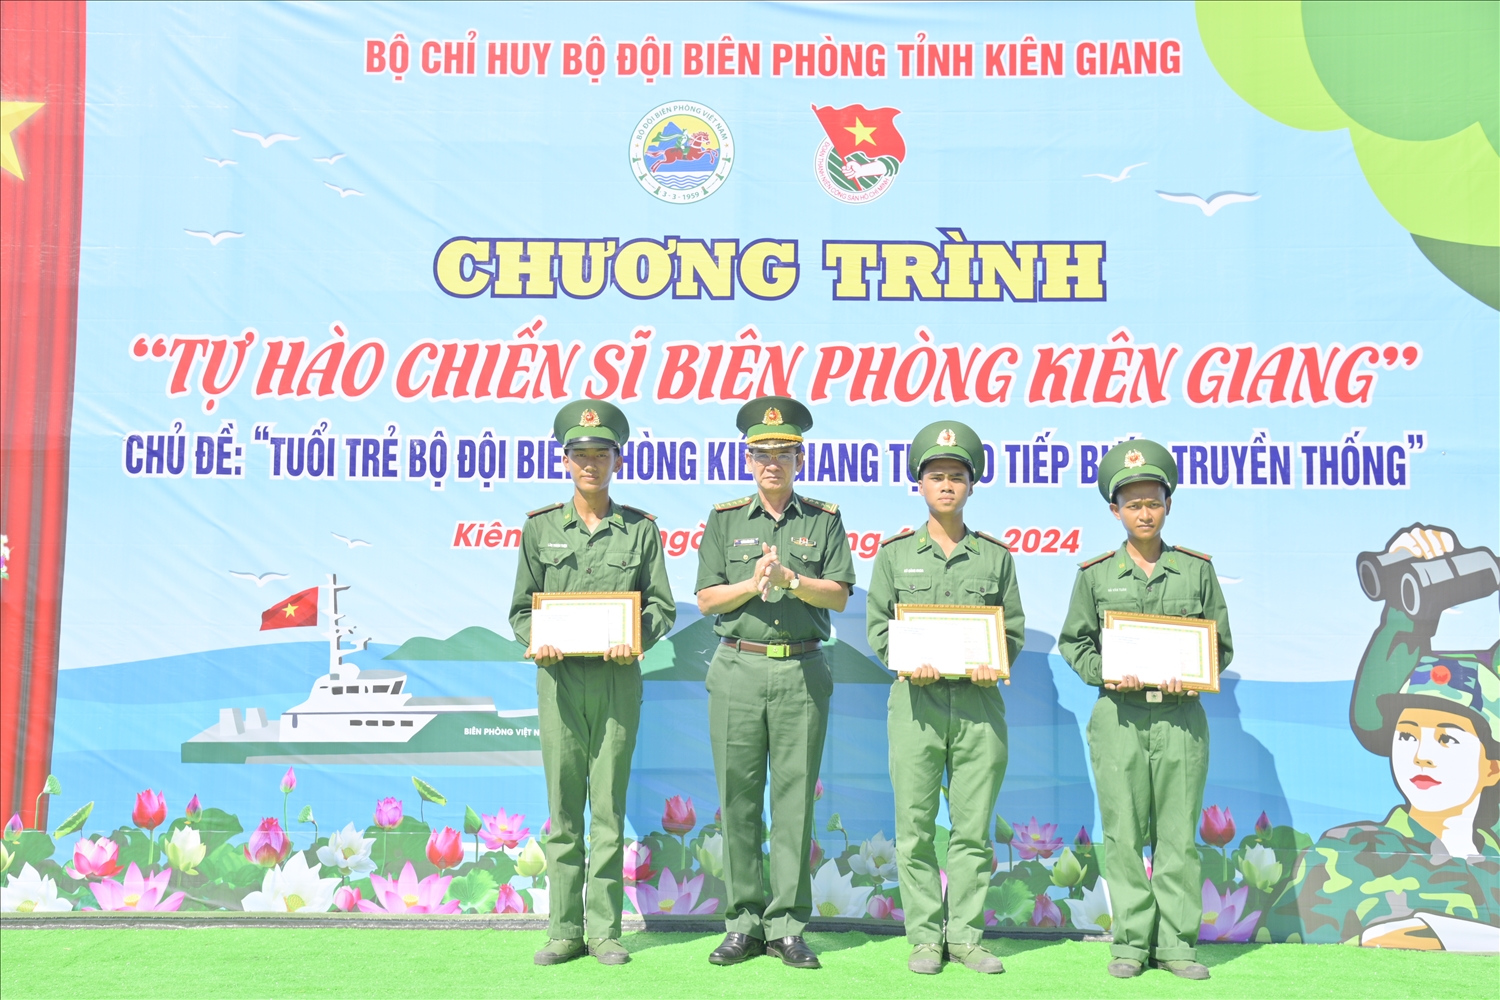 Đại tá Huỳnh Văn Đông, Chính uỷ BĐBP tỉnh Kiên Giang trao giải và giấy khen cho các chiến sĩ ( ảnh: Tiến Vinh)